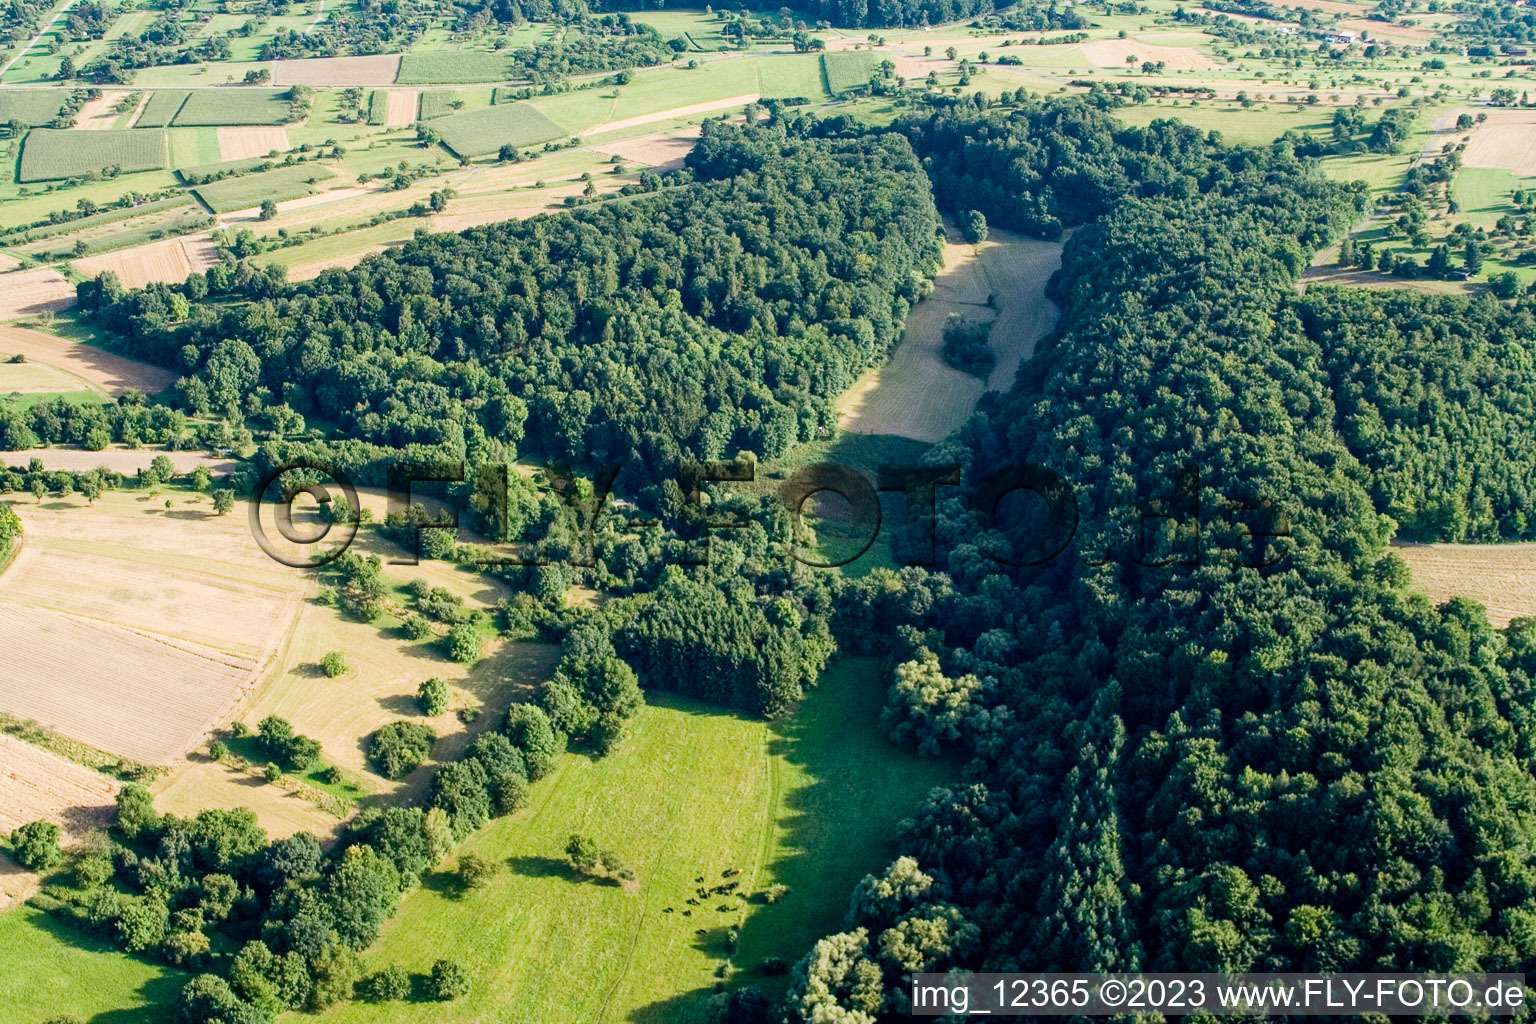 Réserve naturelle de Kettelbachtal à Gräfenhausen dans le département Bade-Wurtemberg, Allemagne du point de vue du drone